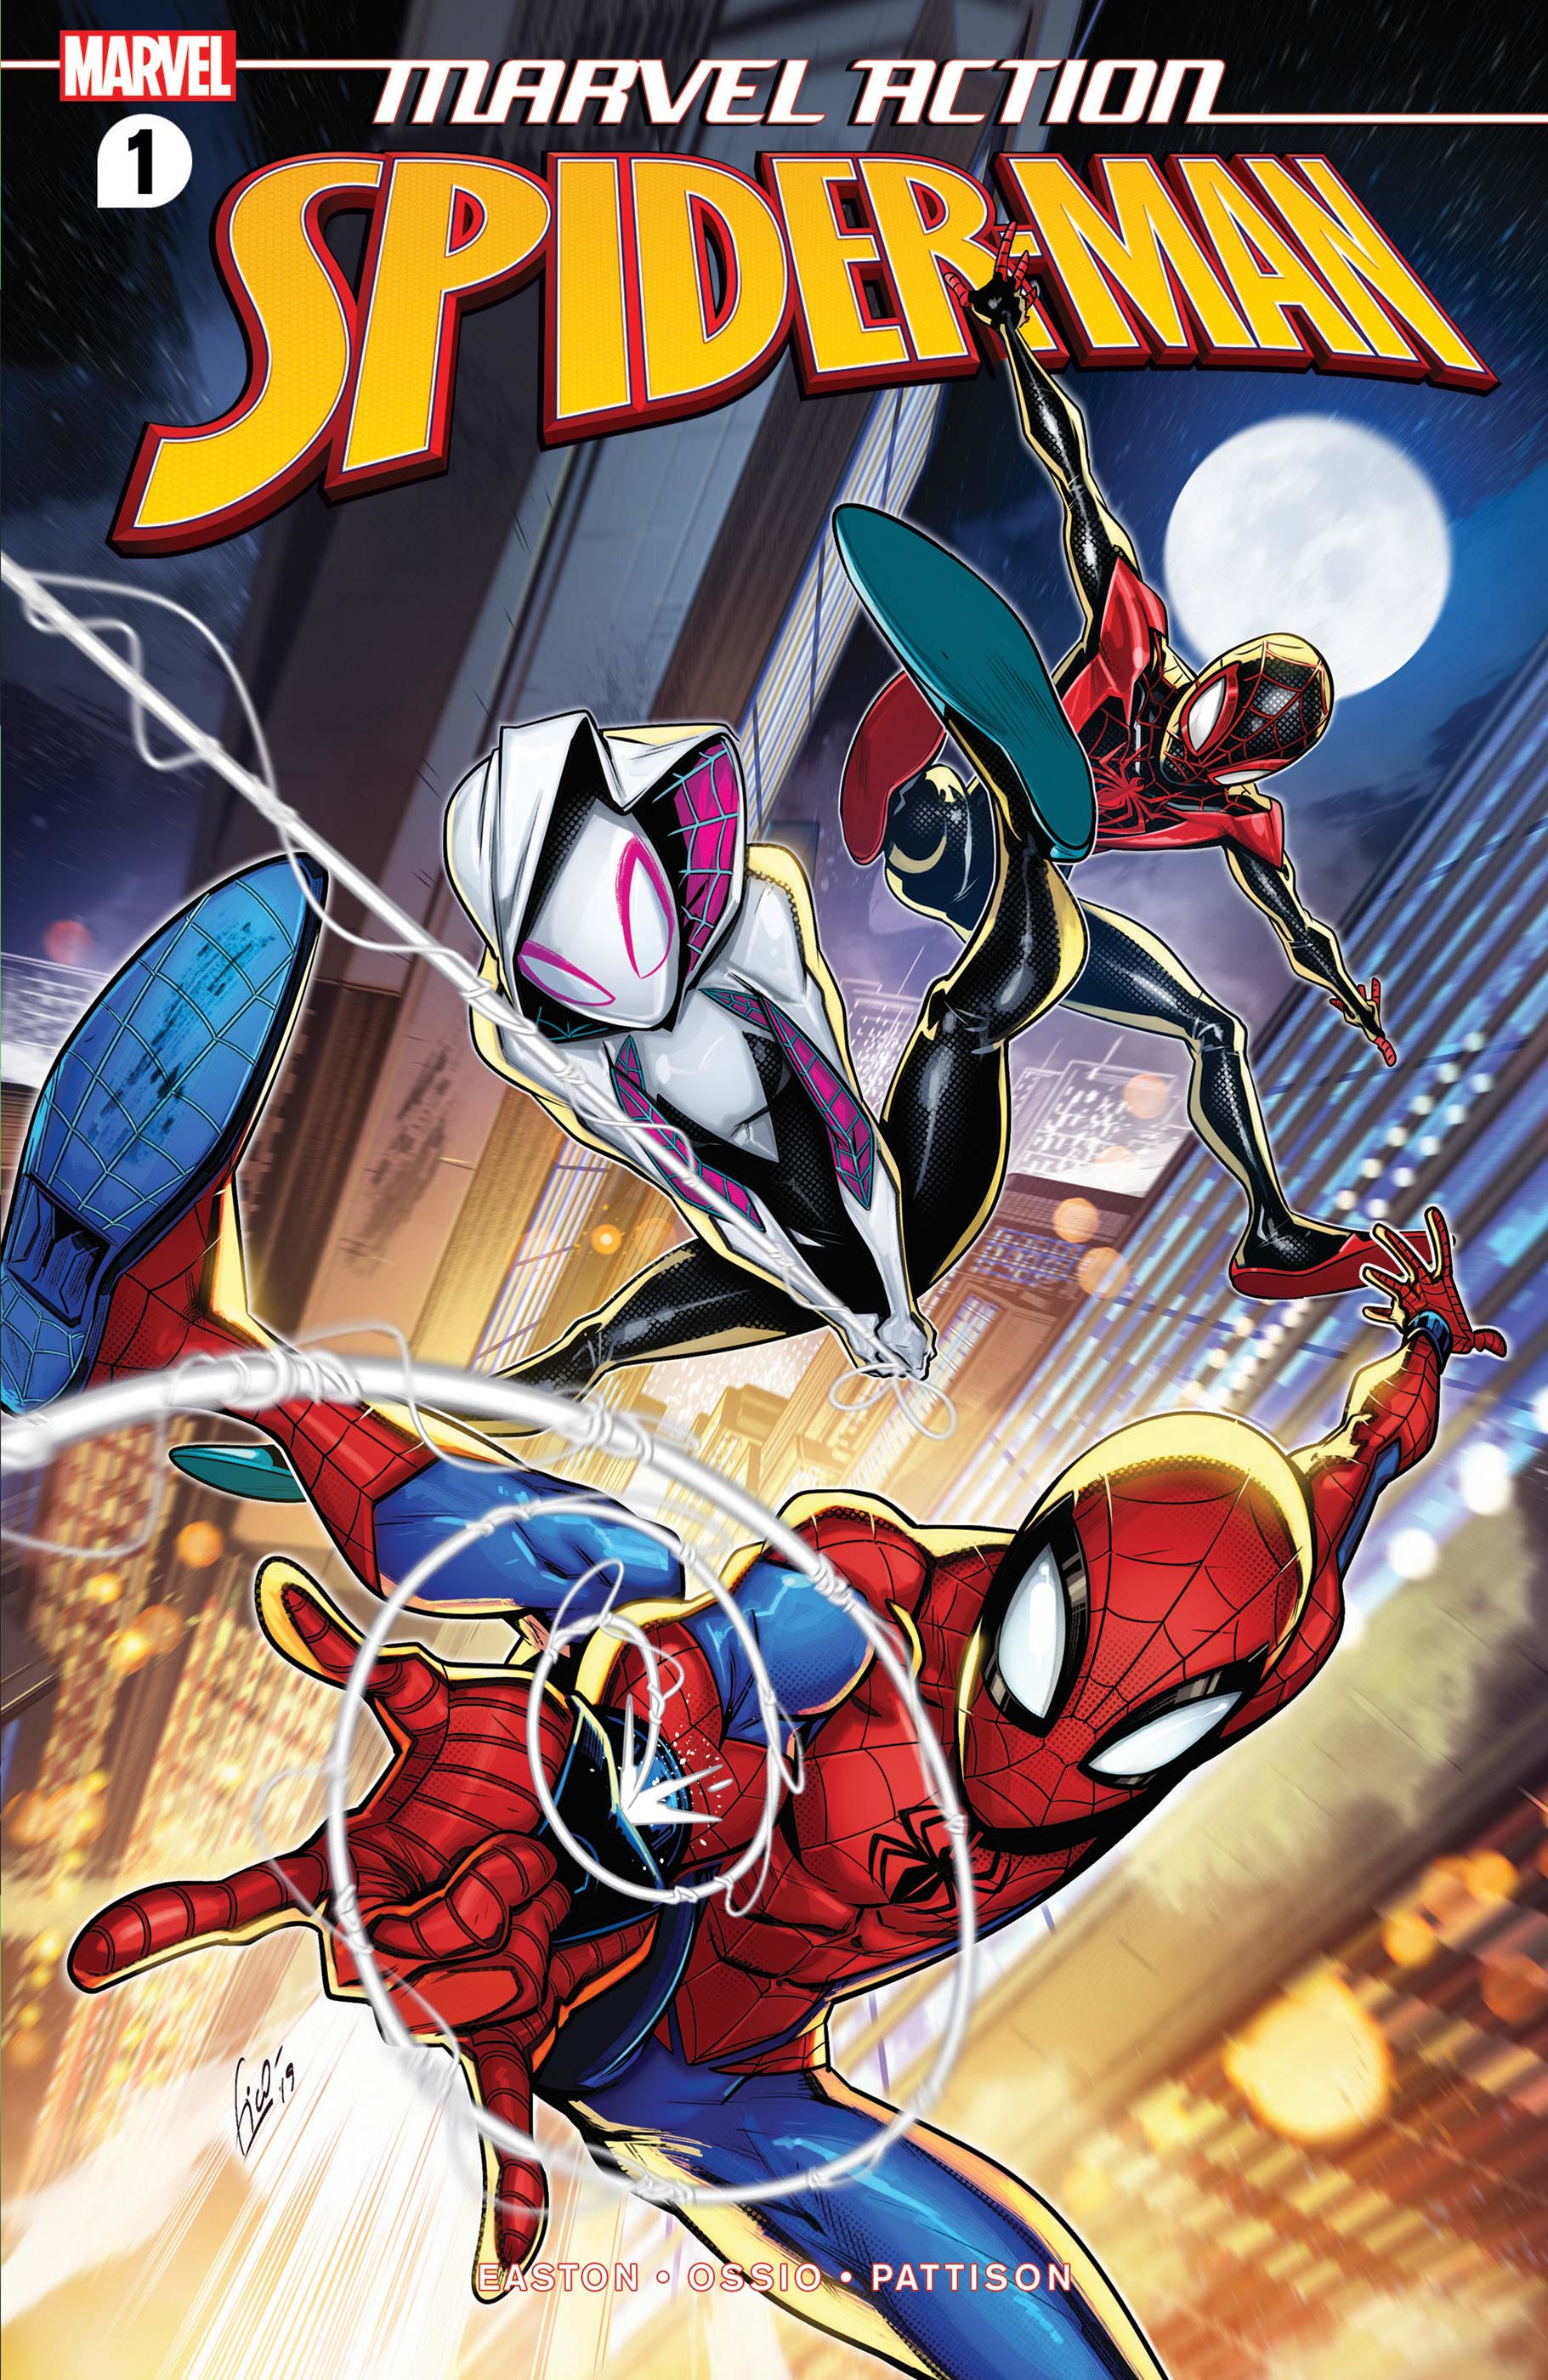 Marvel Action Spider-Man (2020) #1